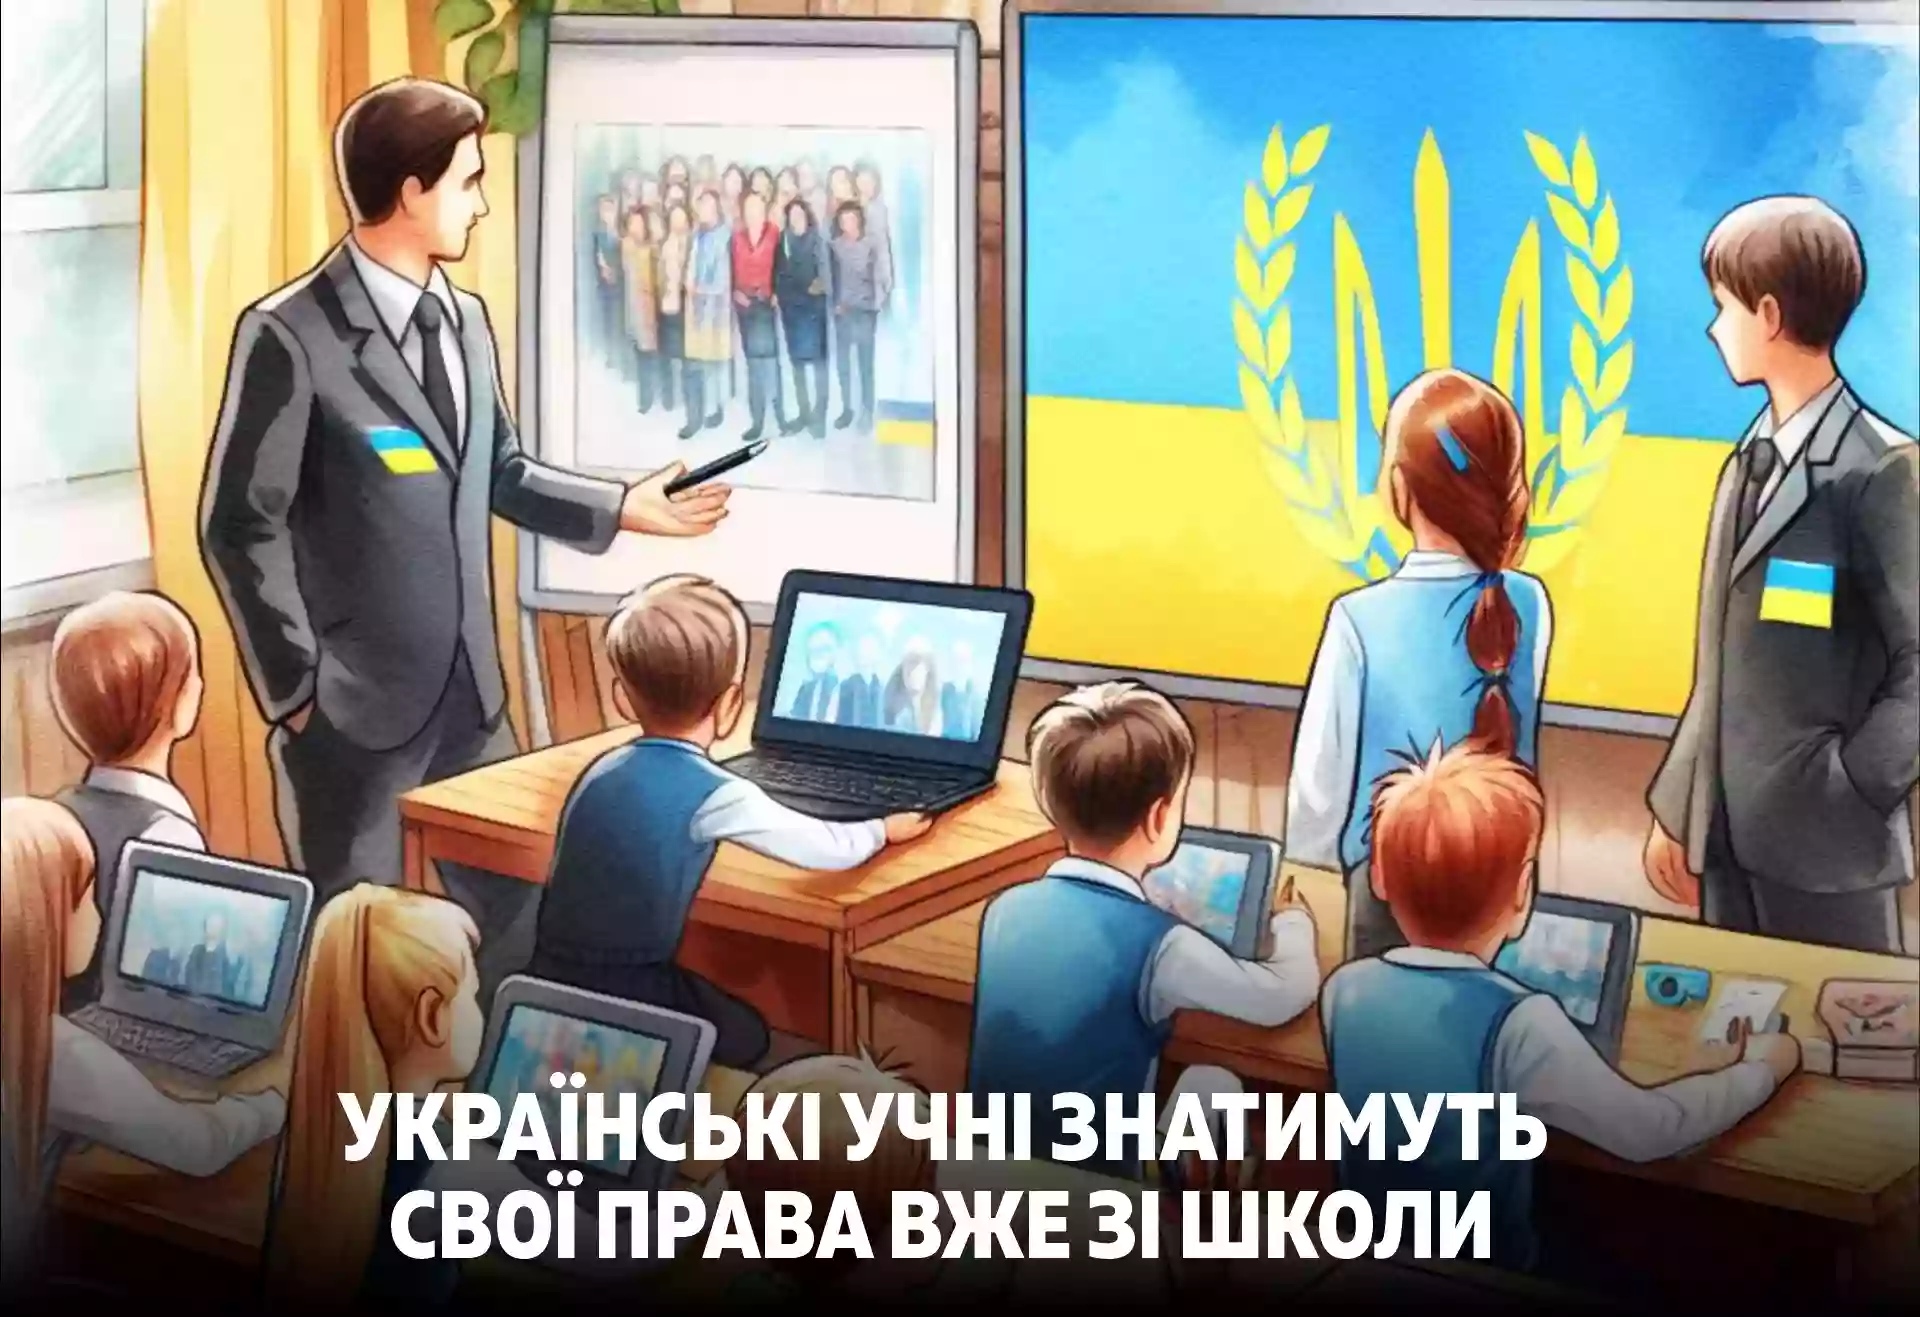 Українських учнів навчатимуть прав дитини згідно з Європейською соціальною хартією